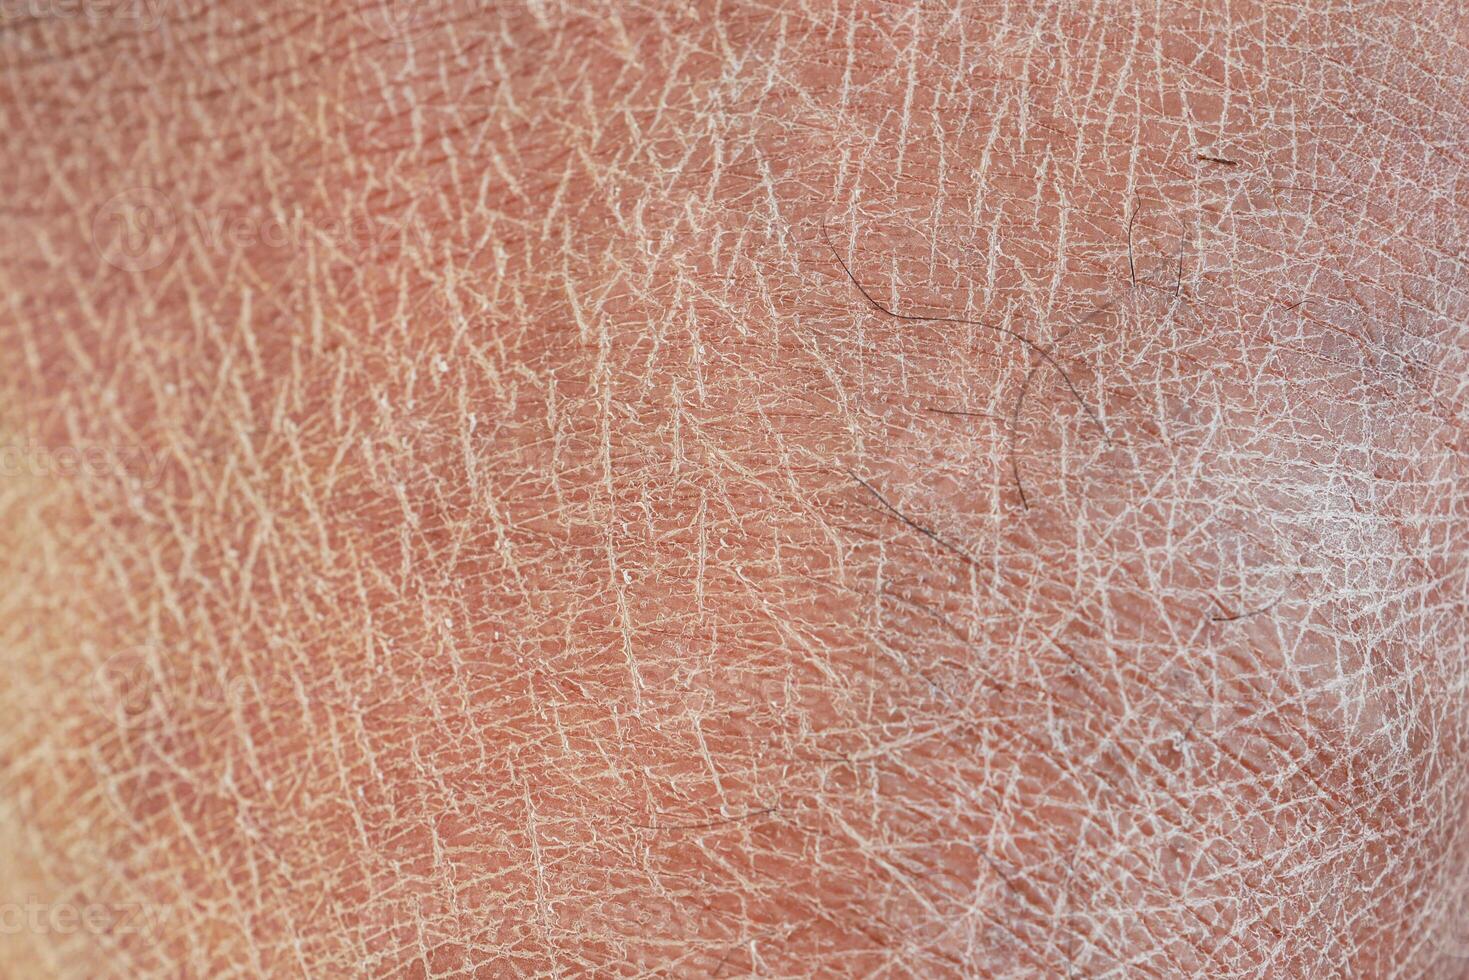 detailopname visie van droog menselijk huid . foto